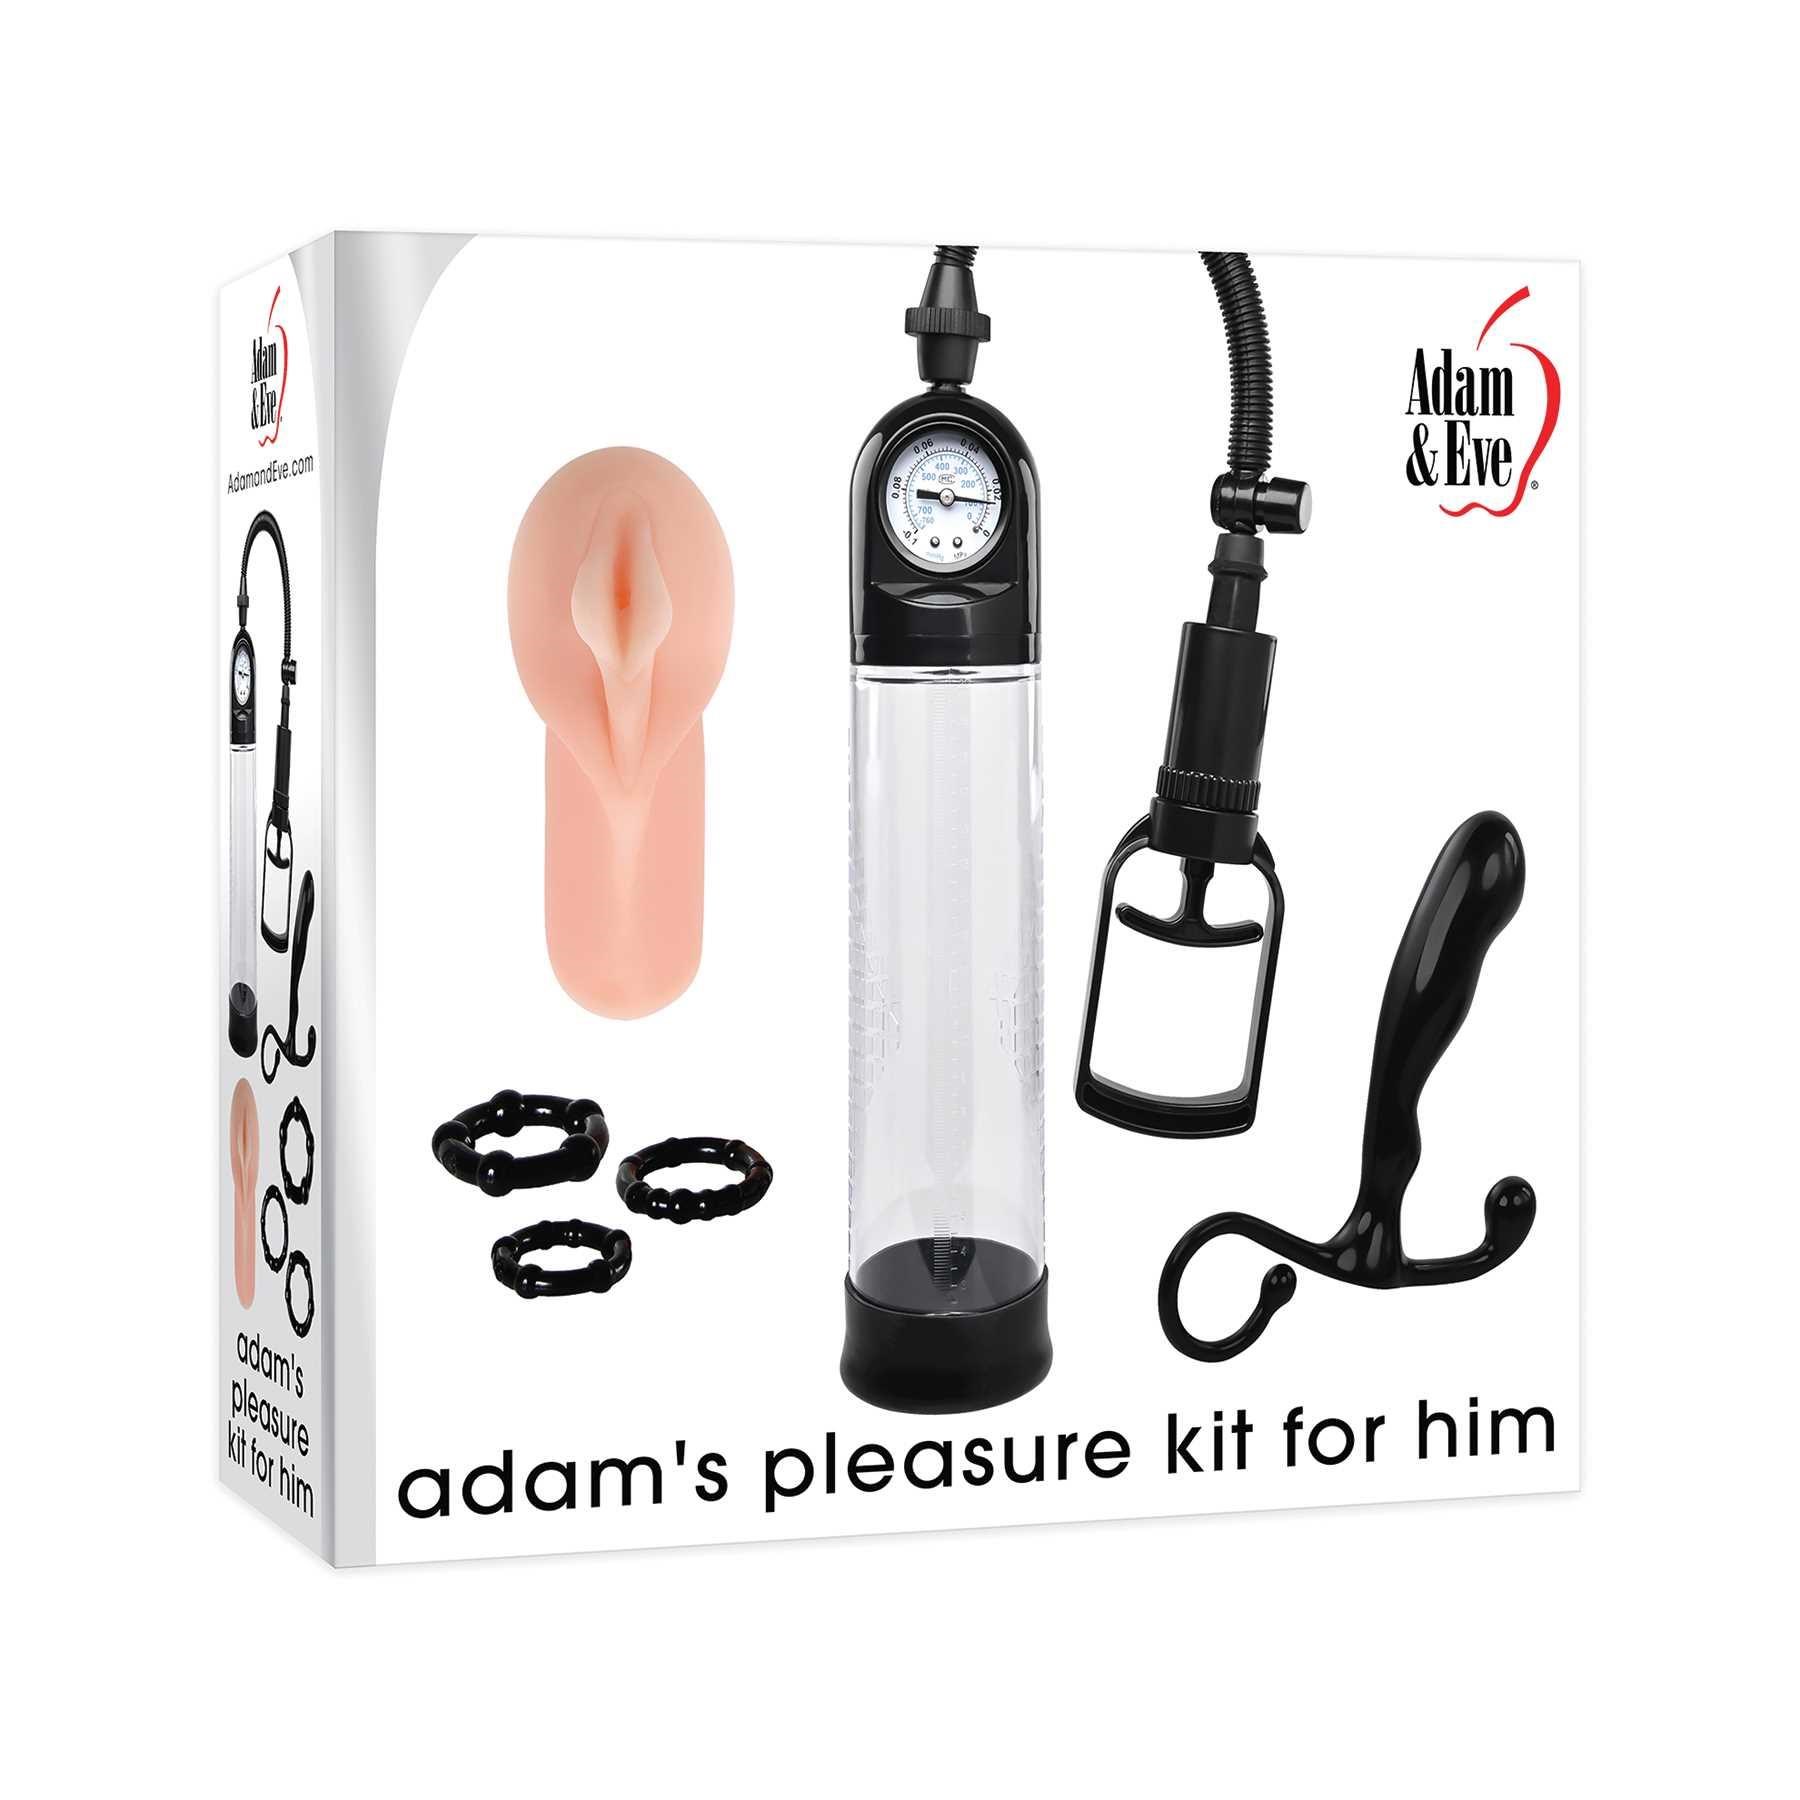 adam's pleasure kit for him box packaging